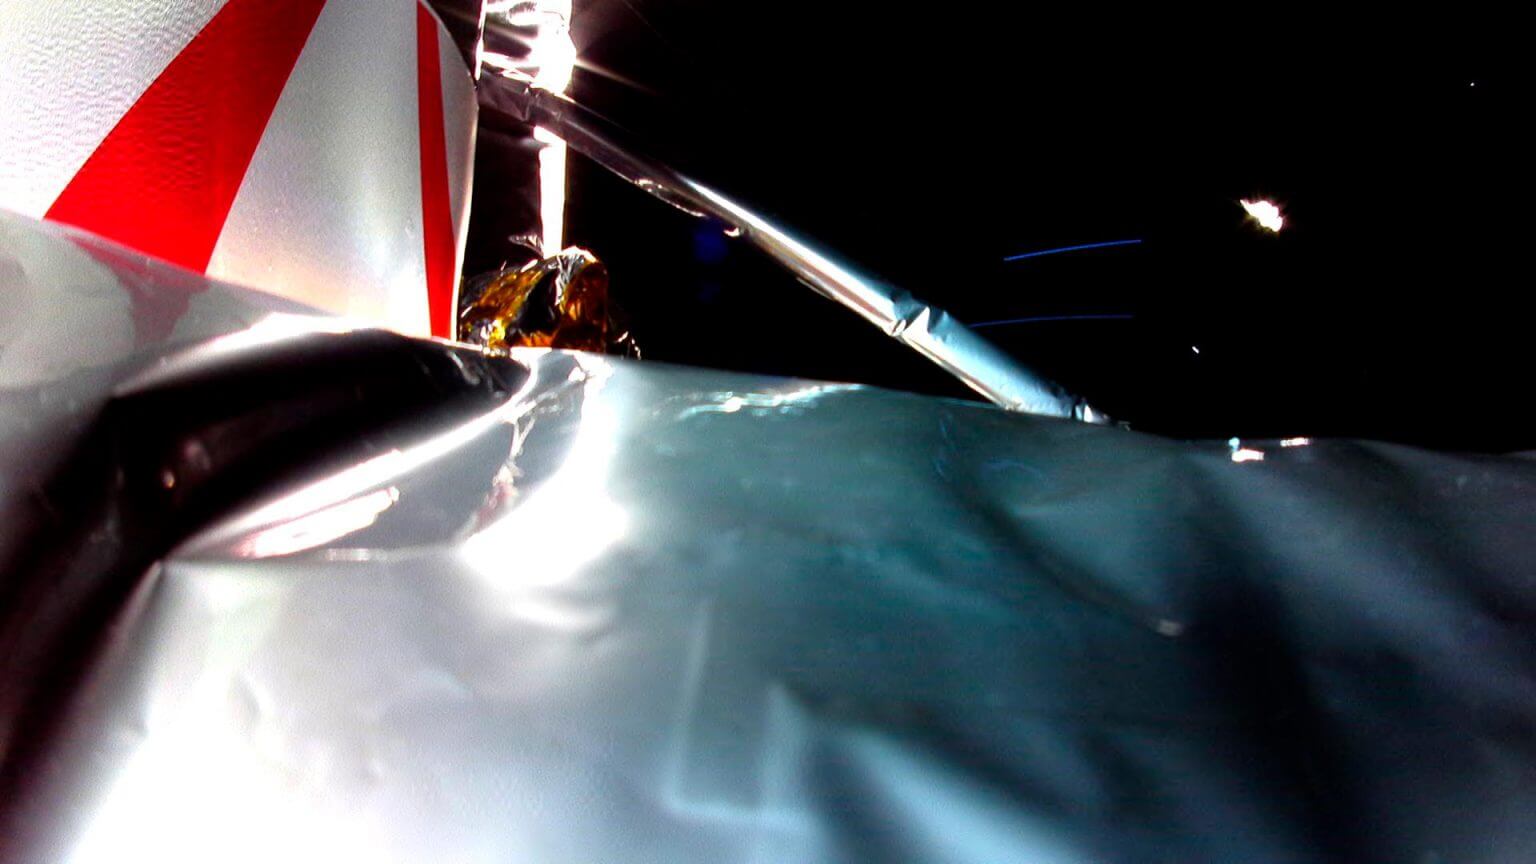 כך נראתה החללית פרגרין במהלך יציאתה מהשלב העליון של המשגר. צילום: אסטרובוטיק